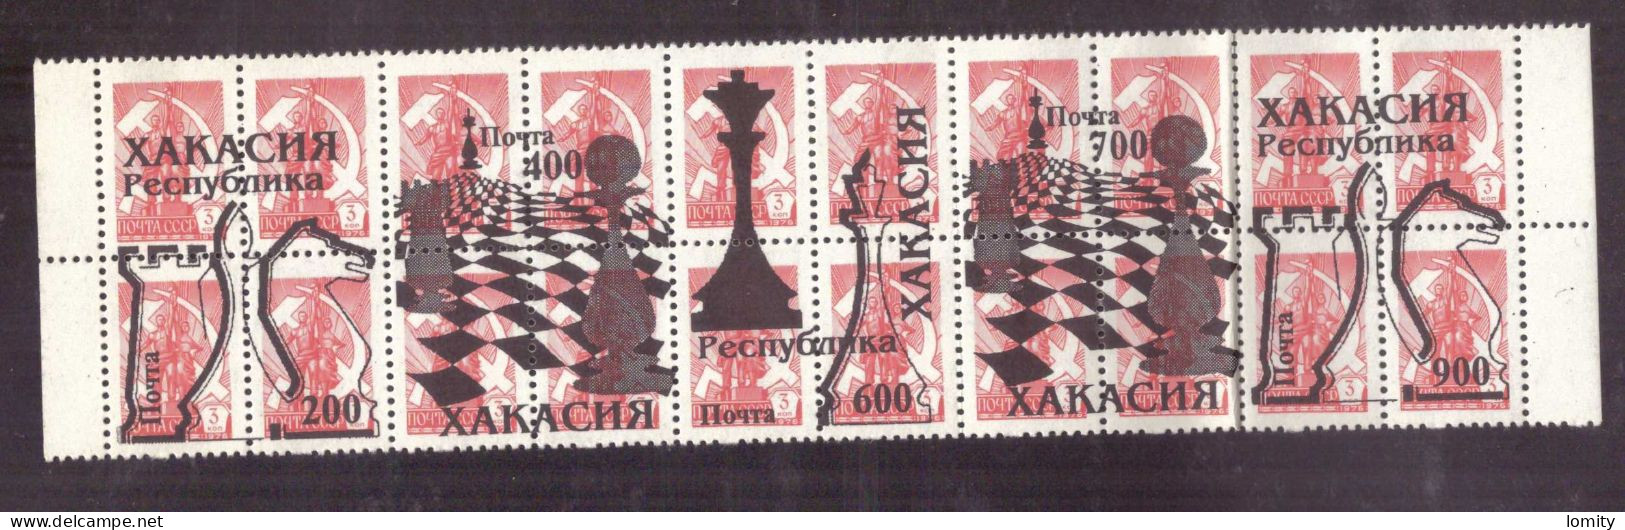 Russie Khakassie Khakassia Хакасия timbres neufs MNH surcharge échecs cavalier tour timbre neuf